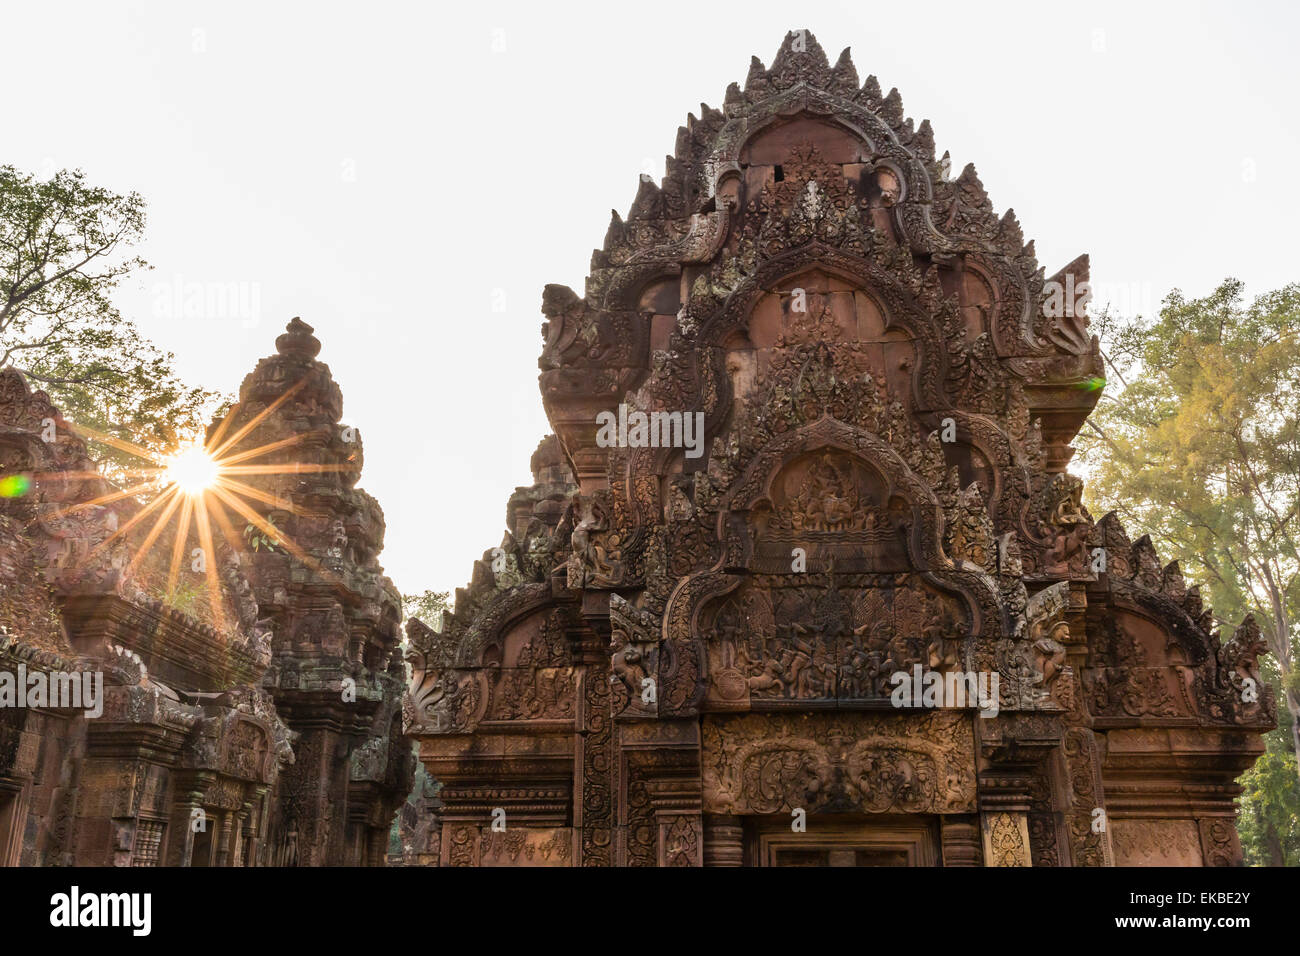 Sculptures décoratives en grès rouge au coucher du soleil au Temple de Banteay Srei à Angkor, l'UNESCO, Siem Reap, Cambodge, Indochine, Asie Banque D'Images